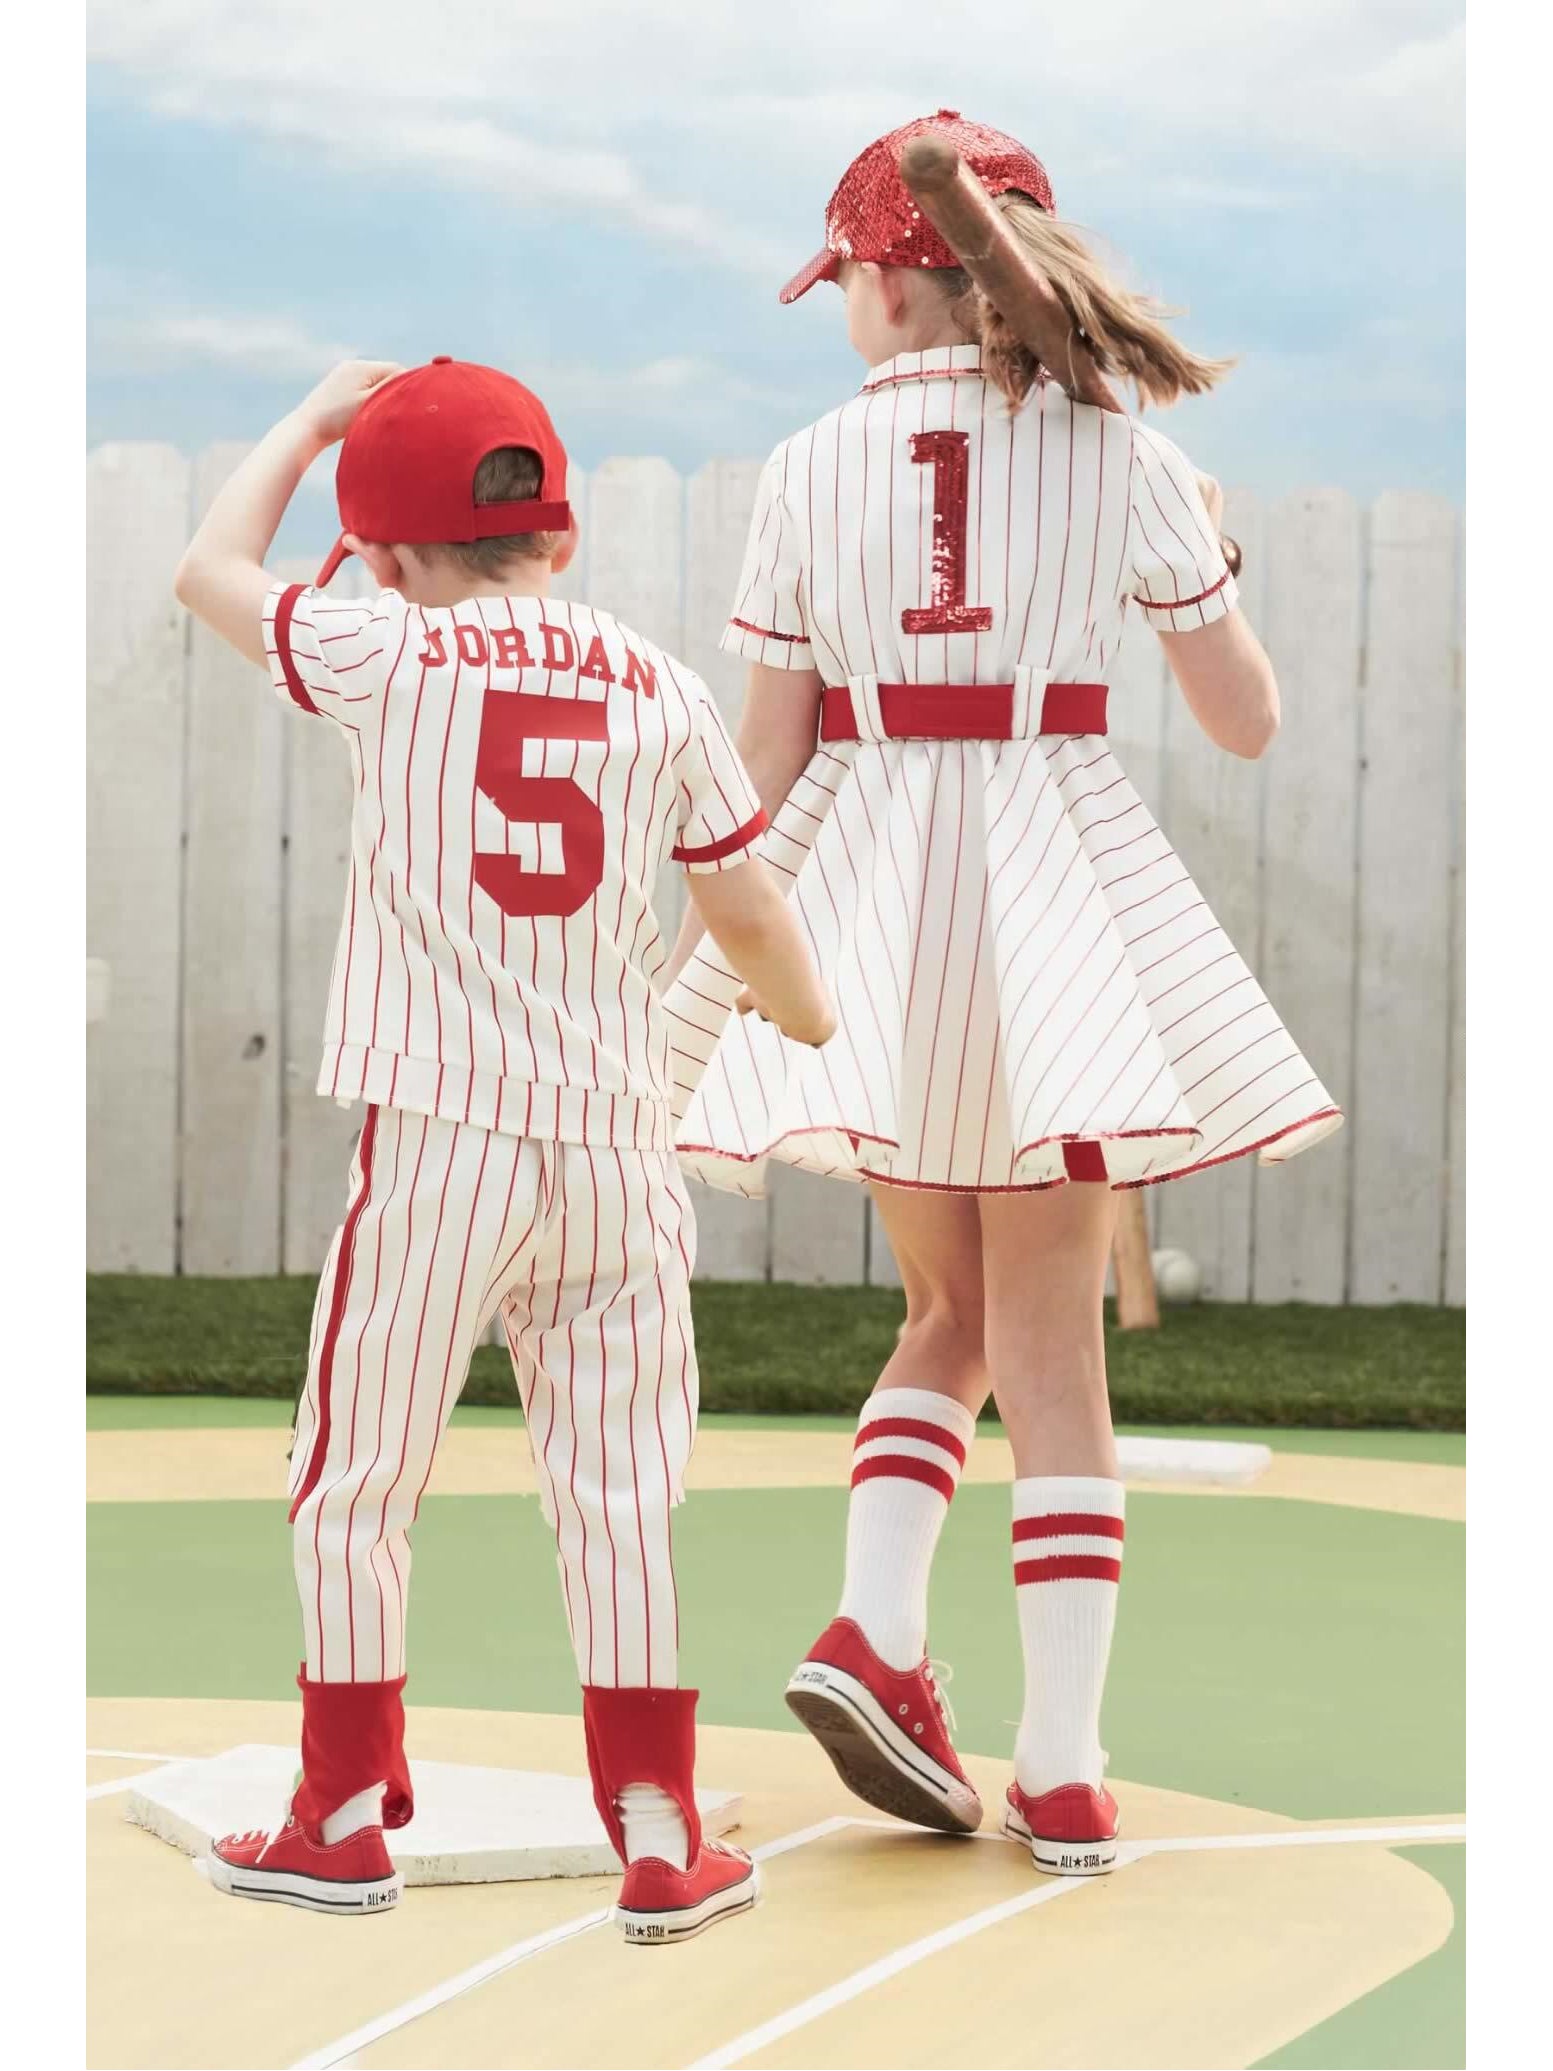 Adult Vintage Baseball Costume